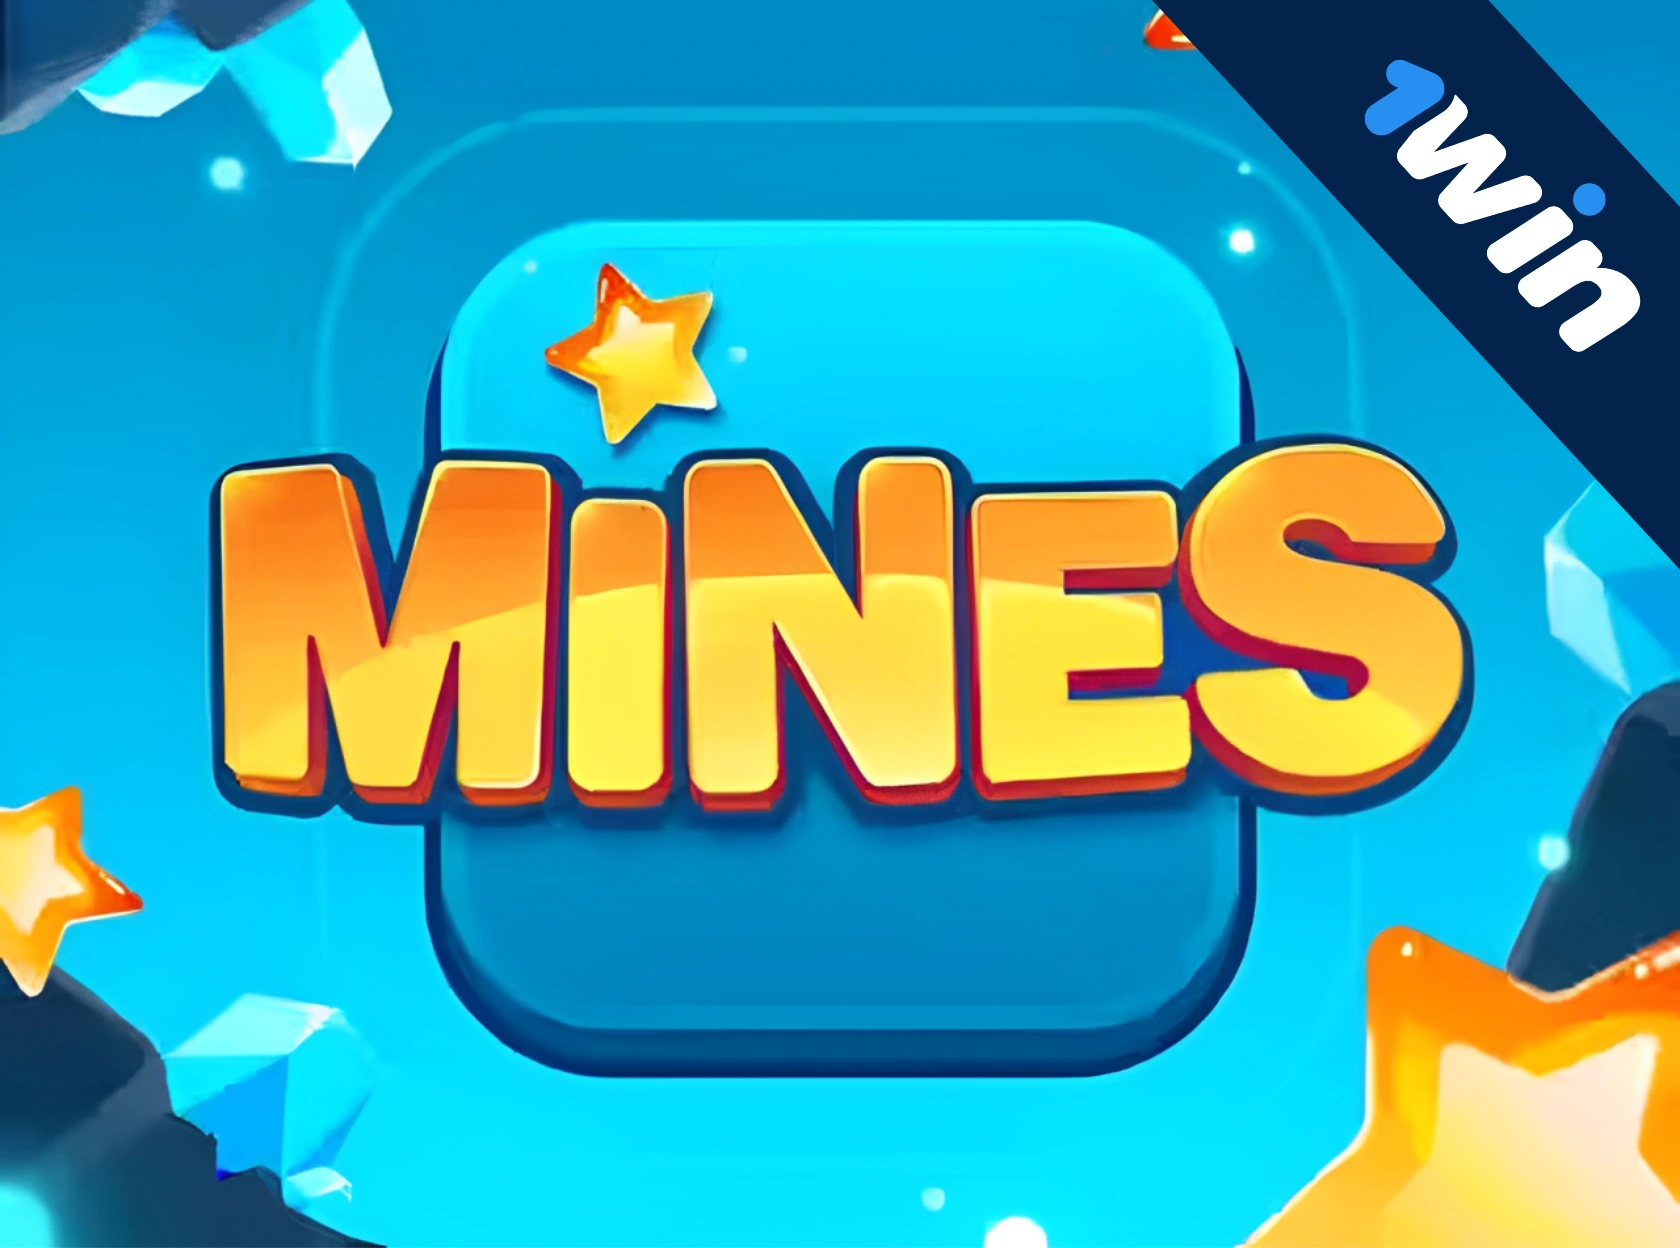 1win Mines - jogue o Campo Minado por dinheiro!